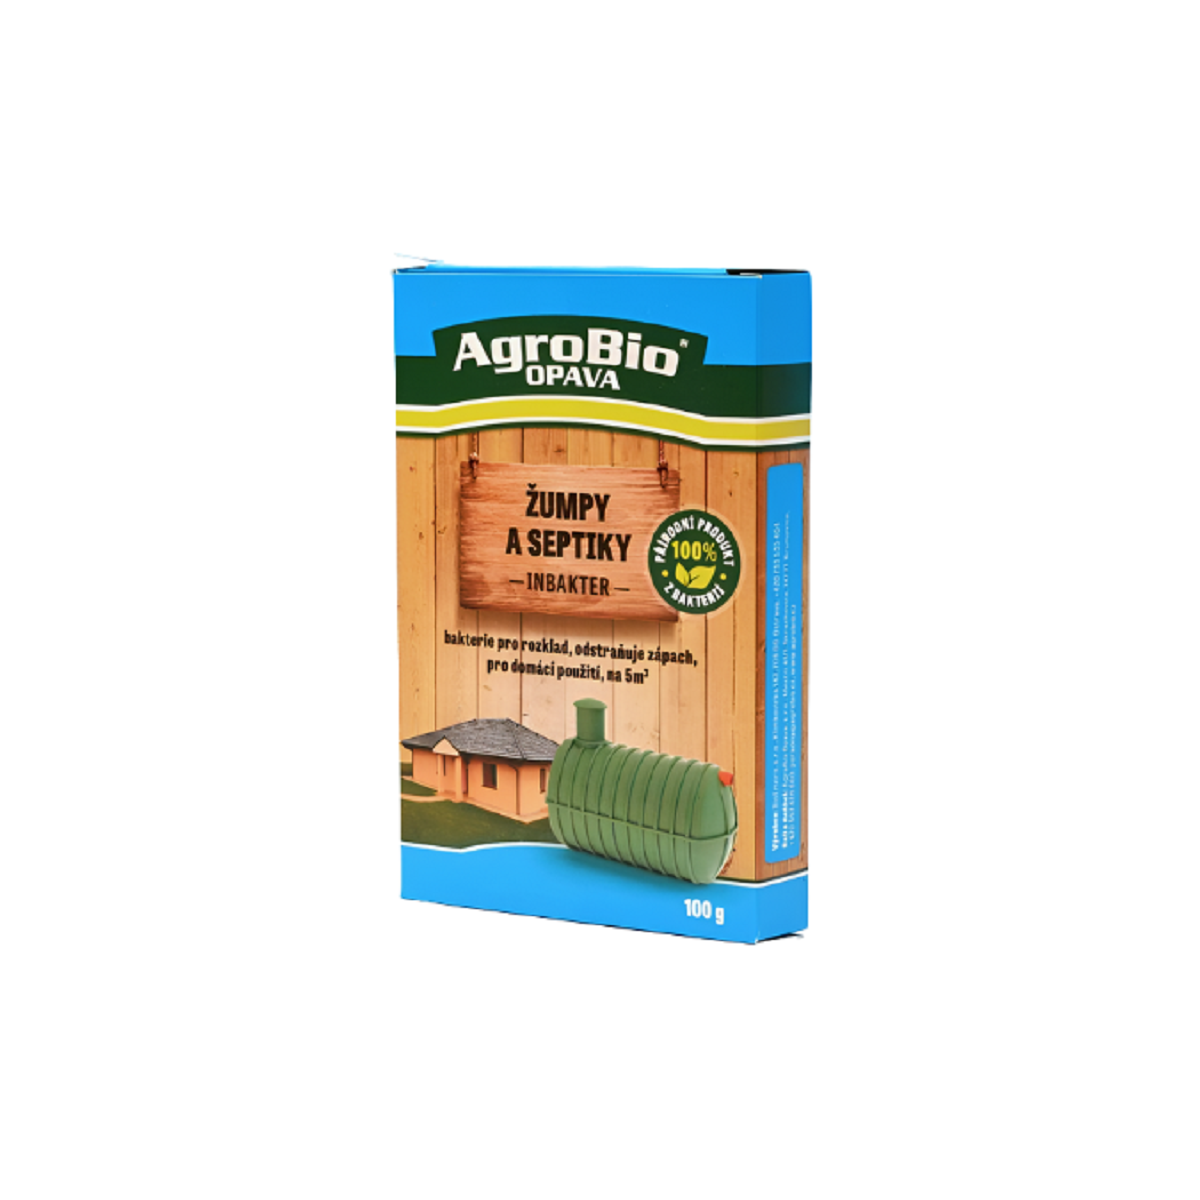 Inbakter žumpy a septiky - AgroBio - přírodní stimulátor - 100 g